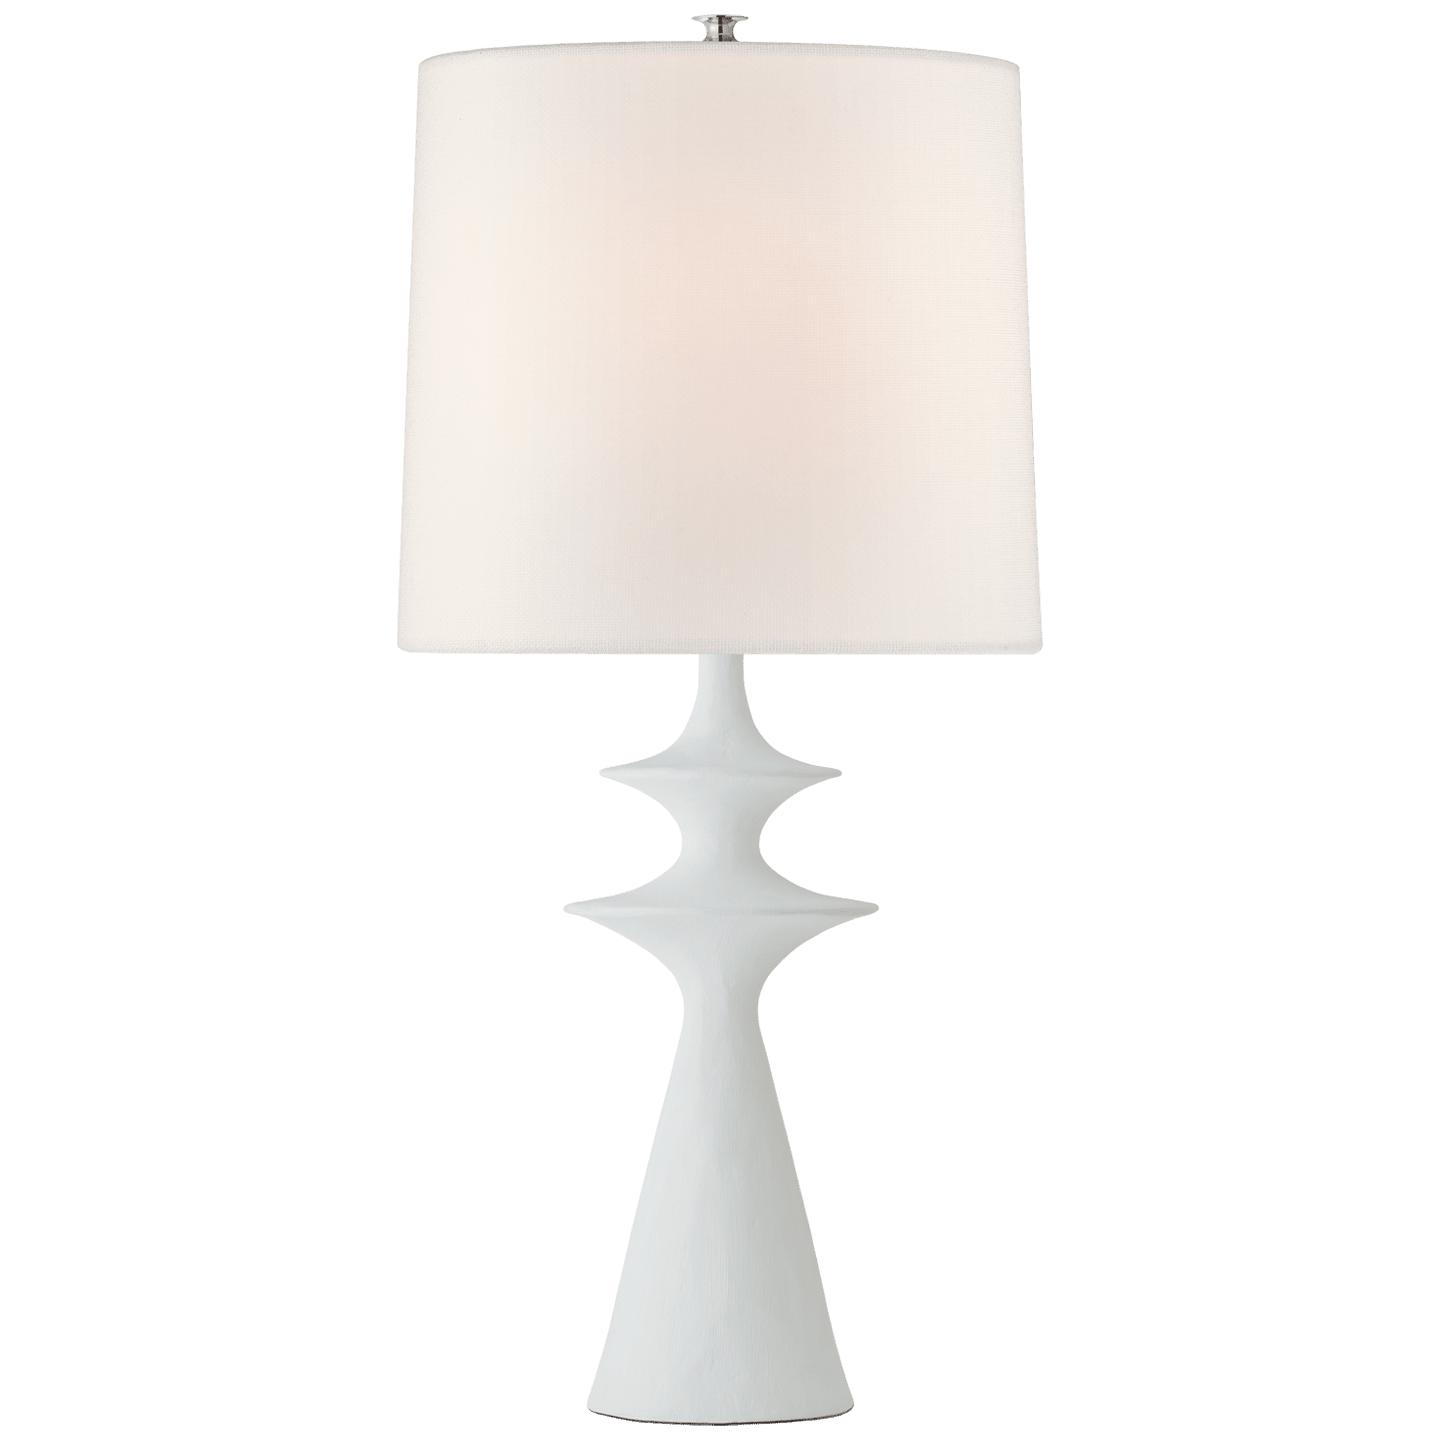 Купить Настольная лампа Lakmos Large Table Lamp в интернет-магазине roooms.ru